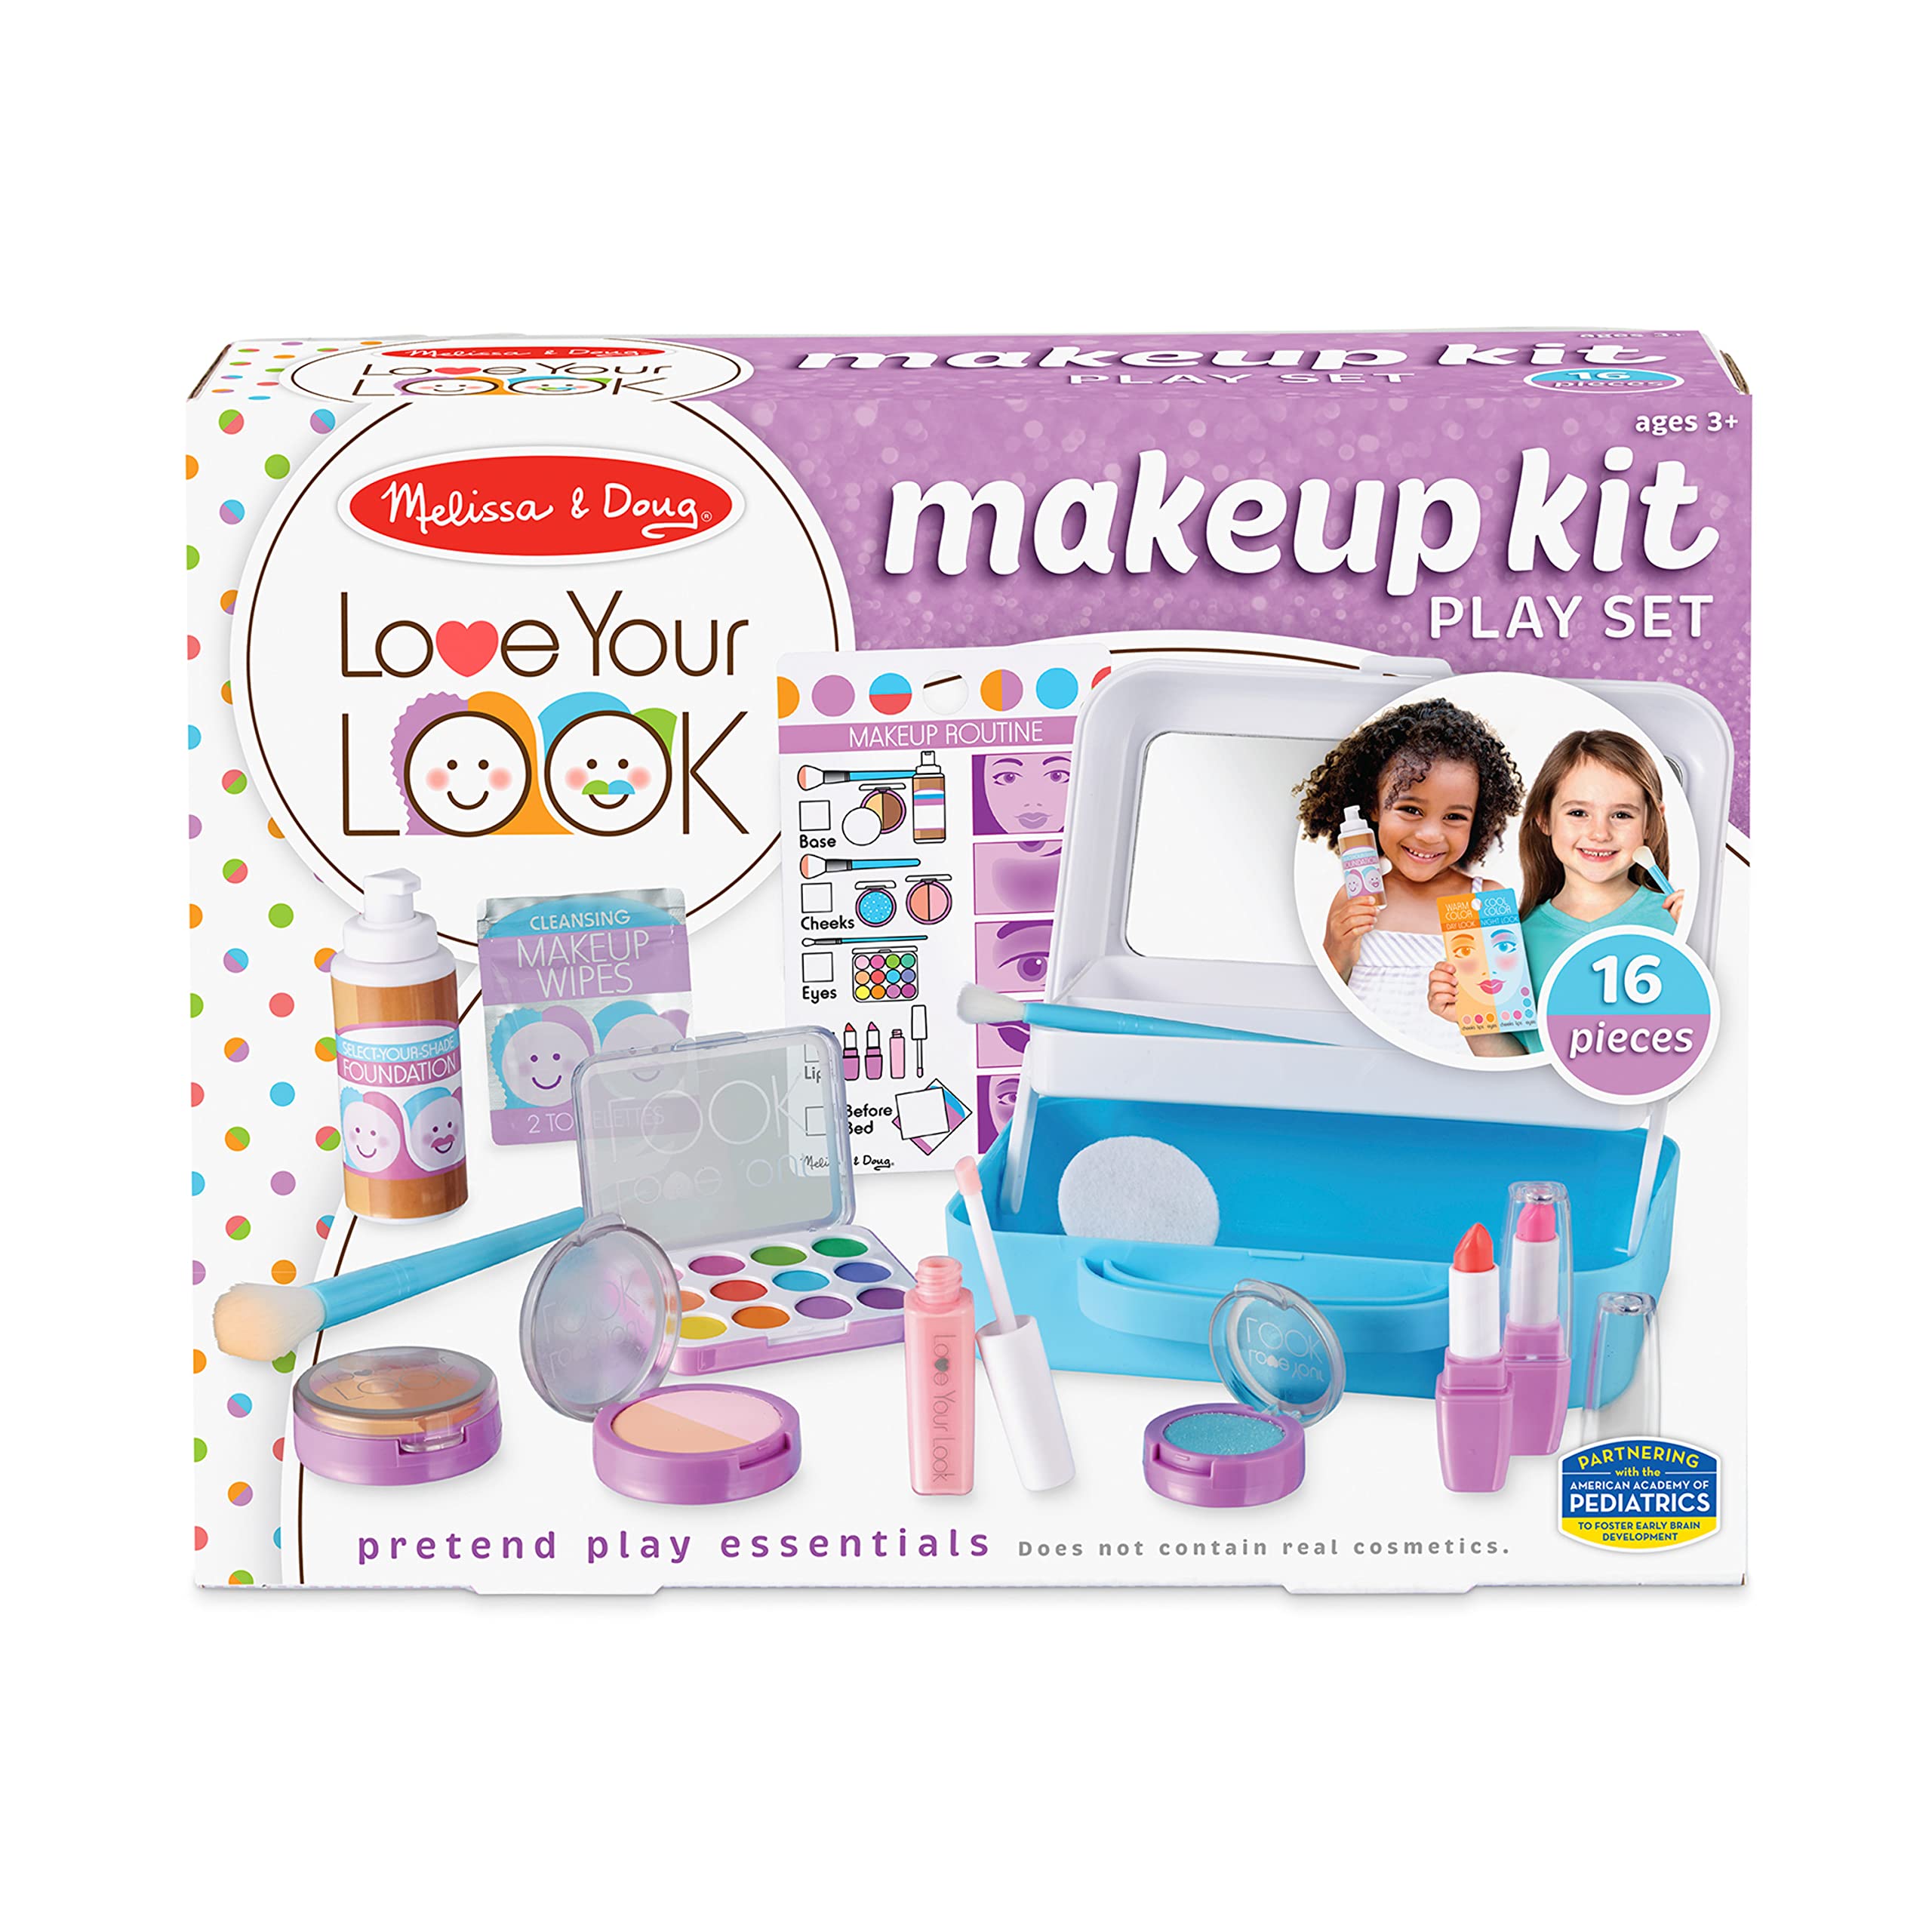 Melissa & Doug Love Your Look - Makeup Kit Play Set,16 pieces of pretend makeup